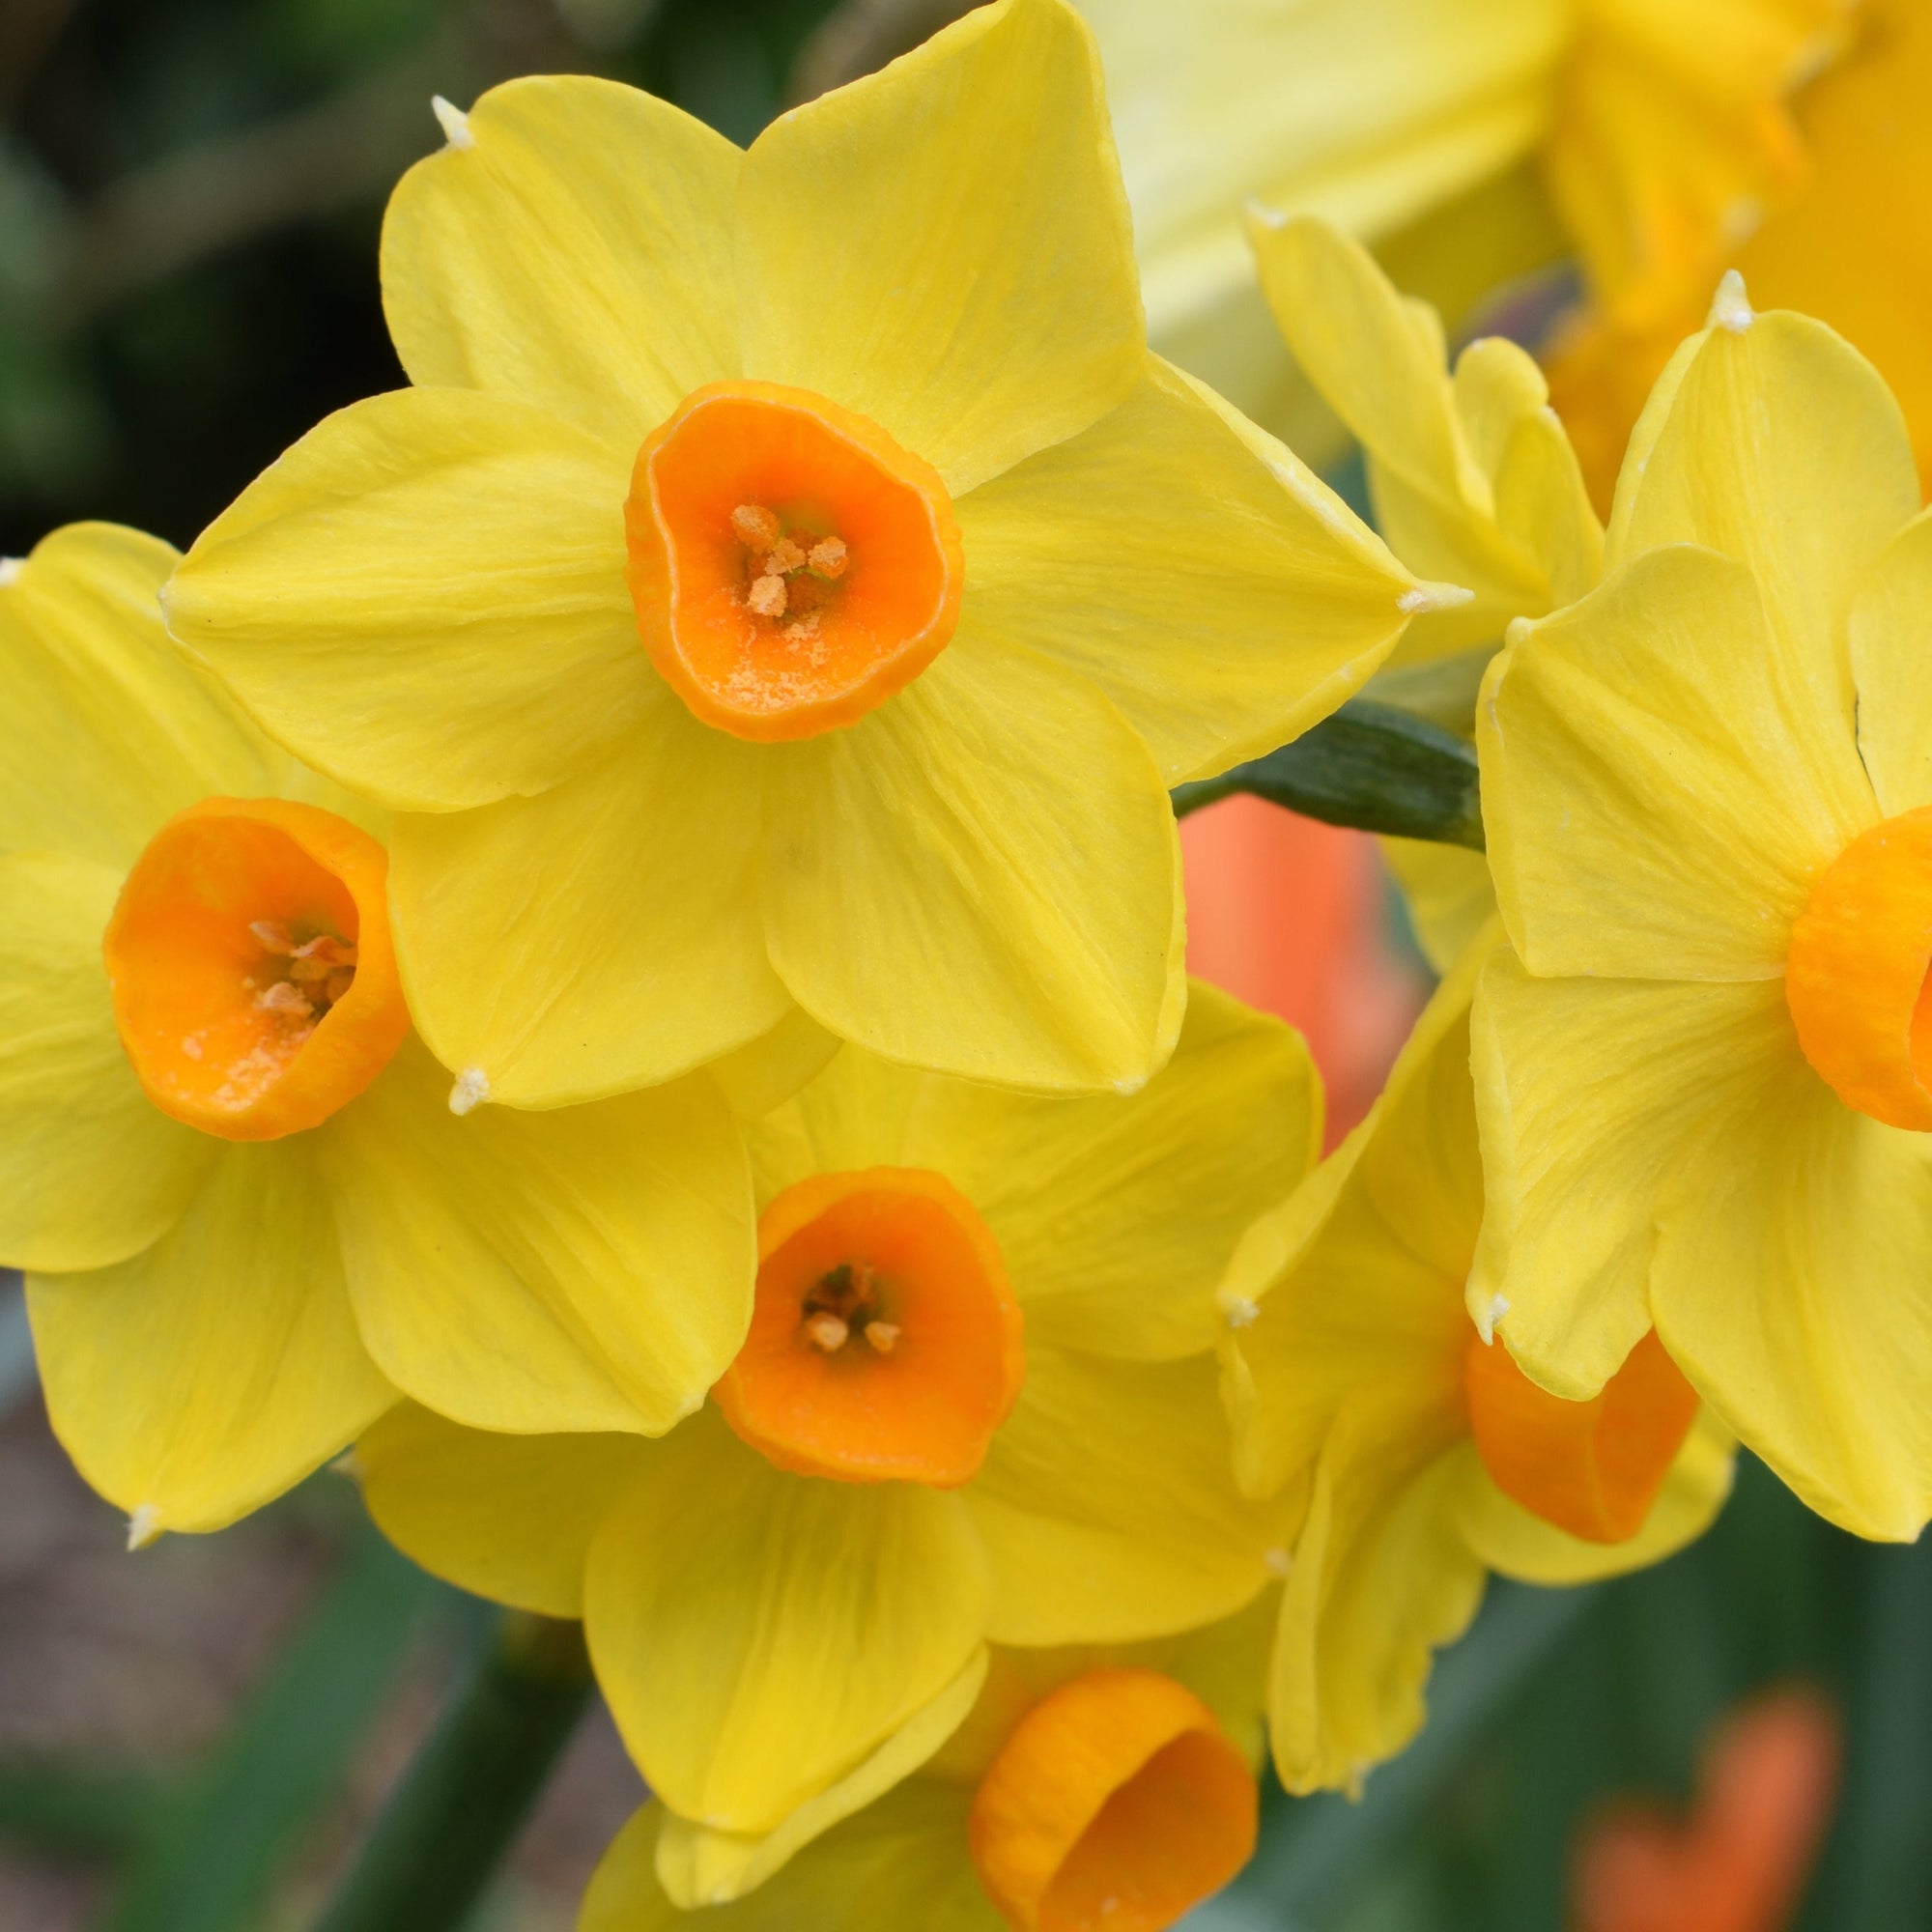 Dwarf Daffodil 'Martinette' (10 Bulbs)